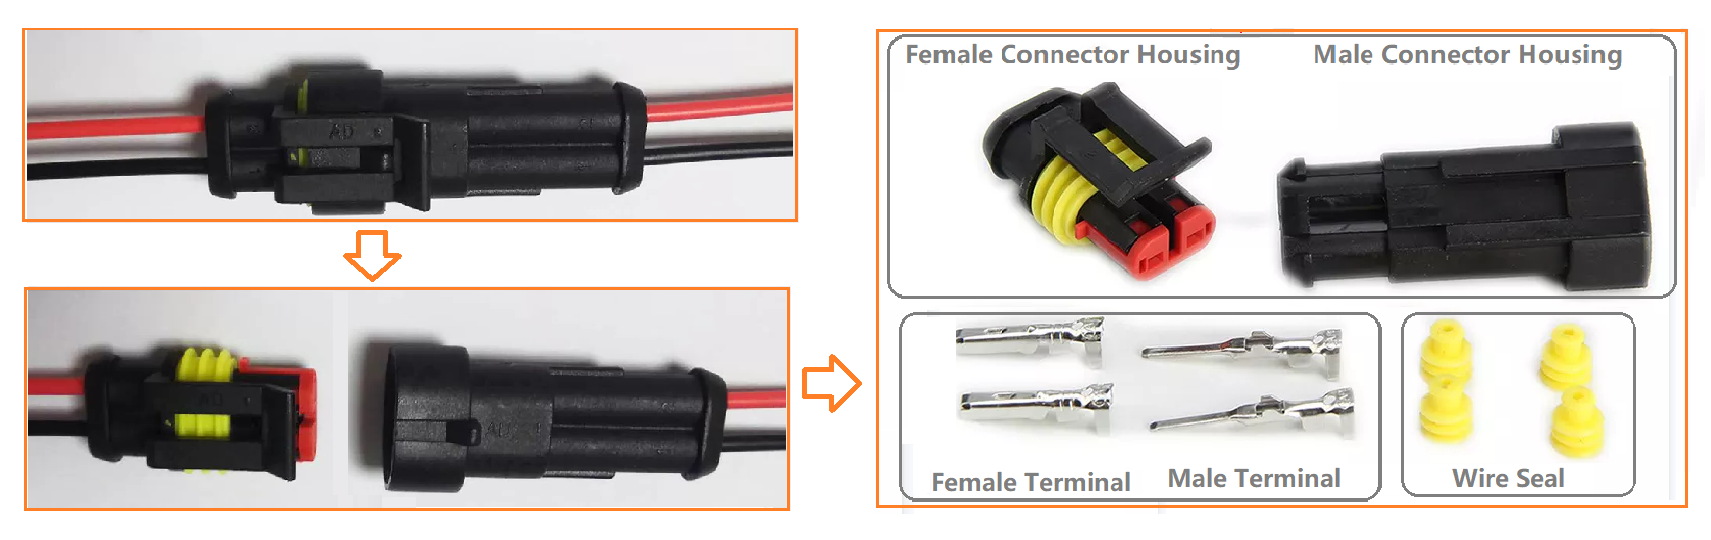 1-Components of Connectors